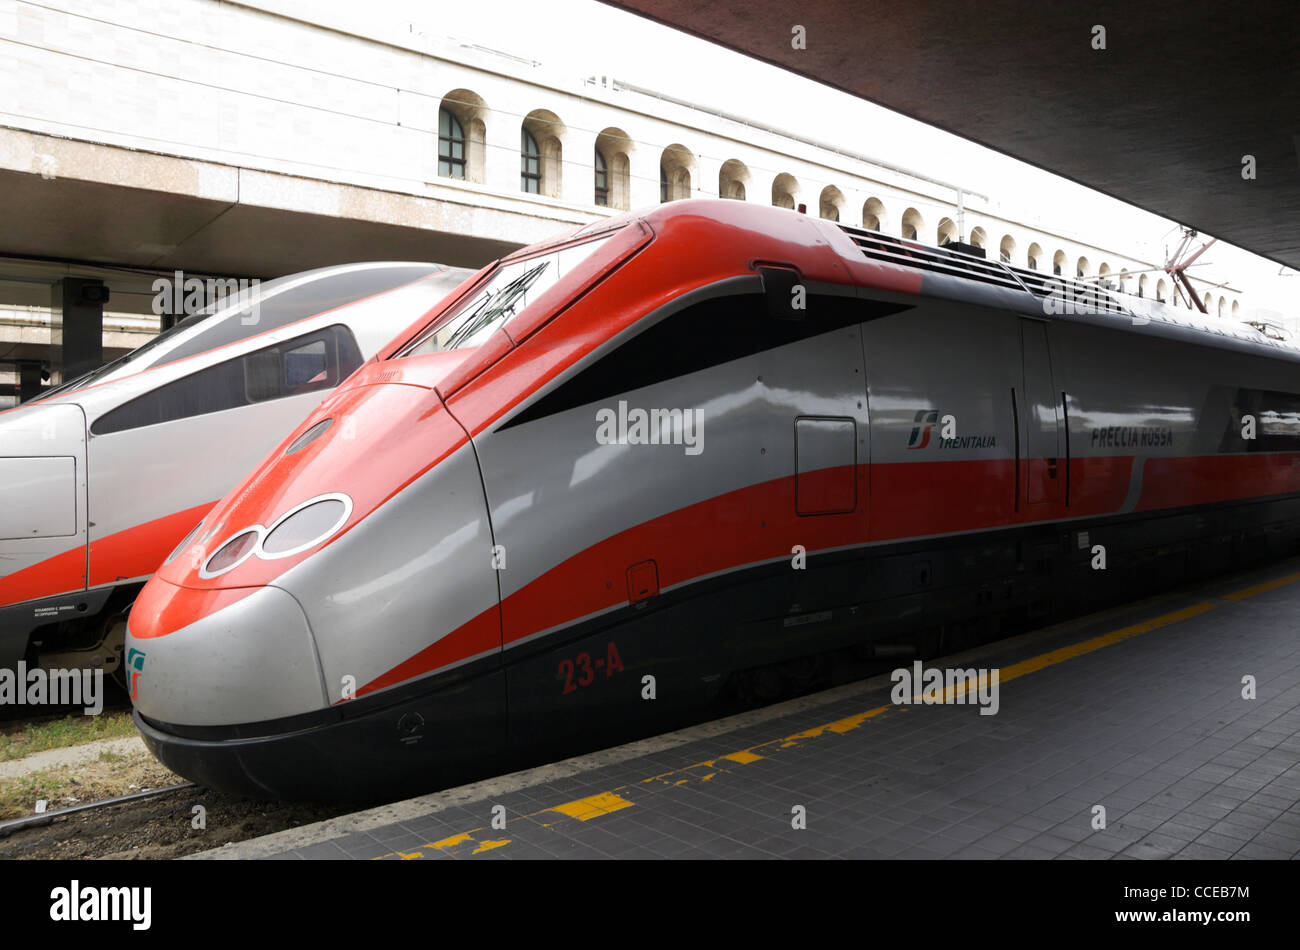 Frecciarossa fast train at Termini railway station in Rome, Italy. Stock Photo